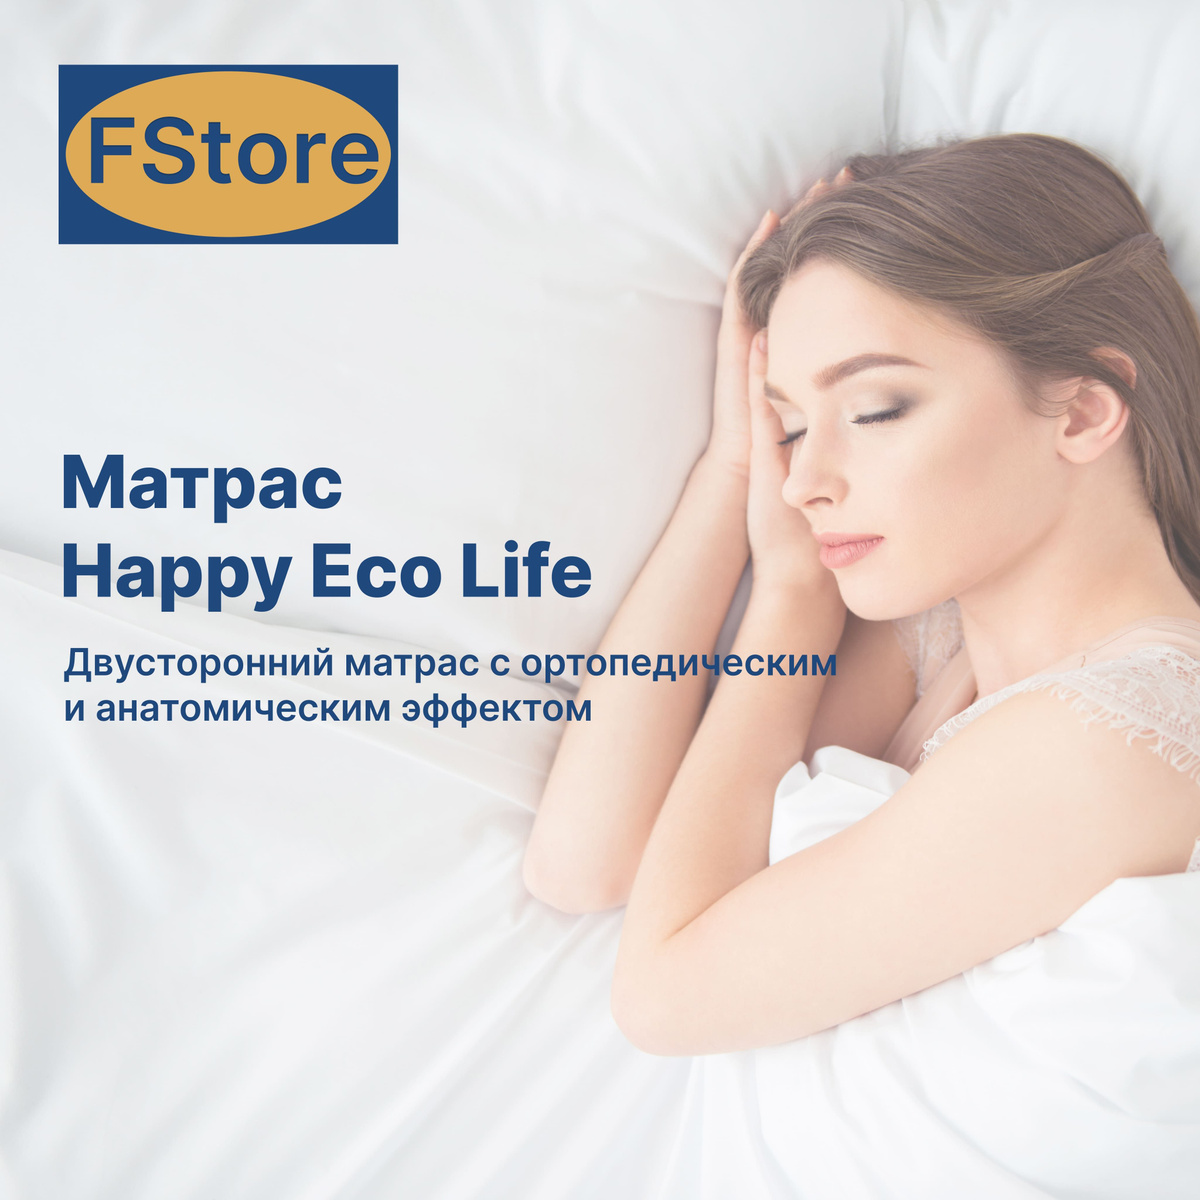 Матрас FStore Happy Eco Life